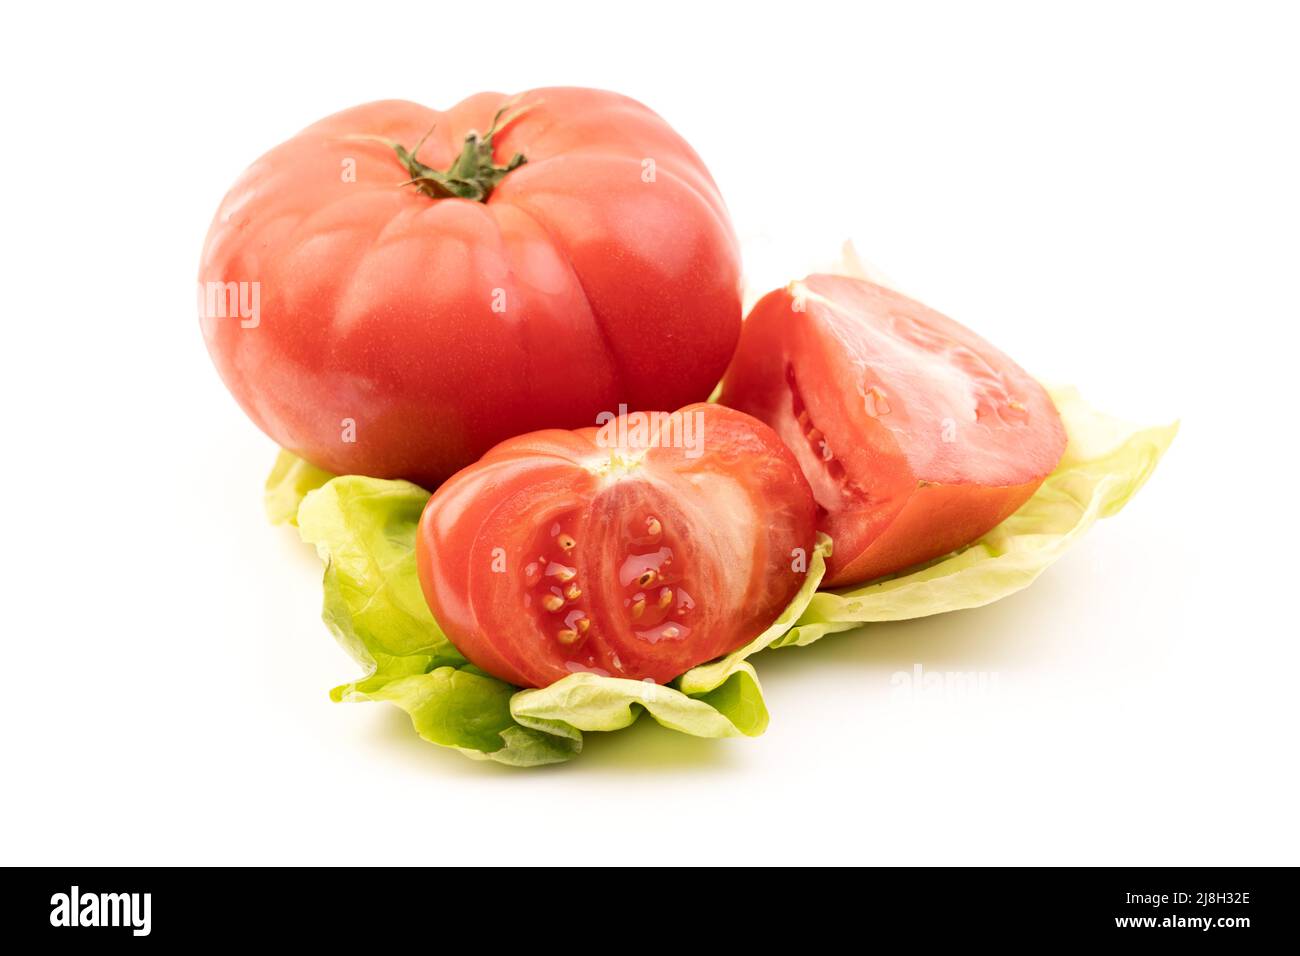 Fresh tomato isolated on white background. Stock Photo